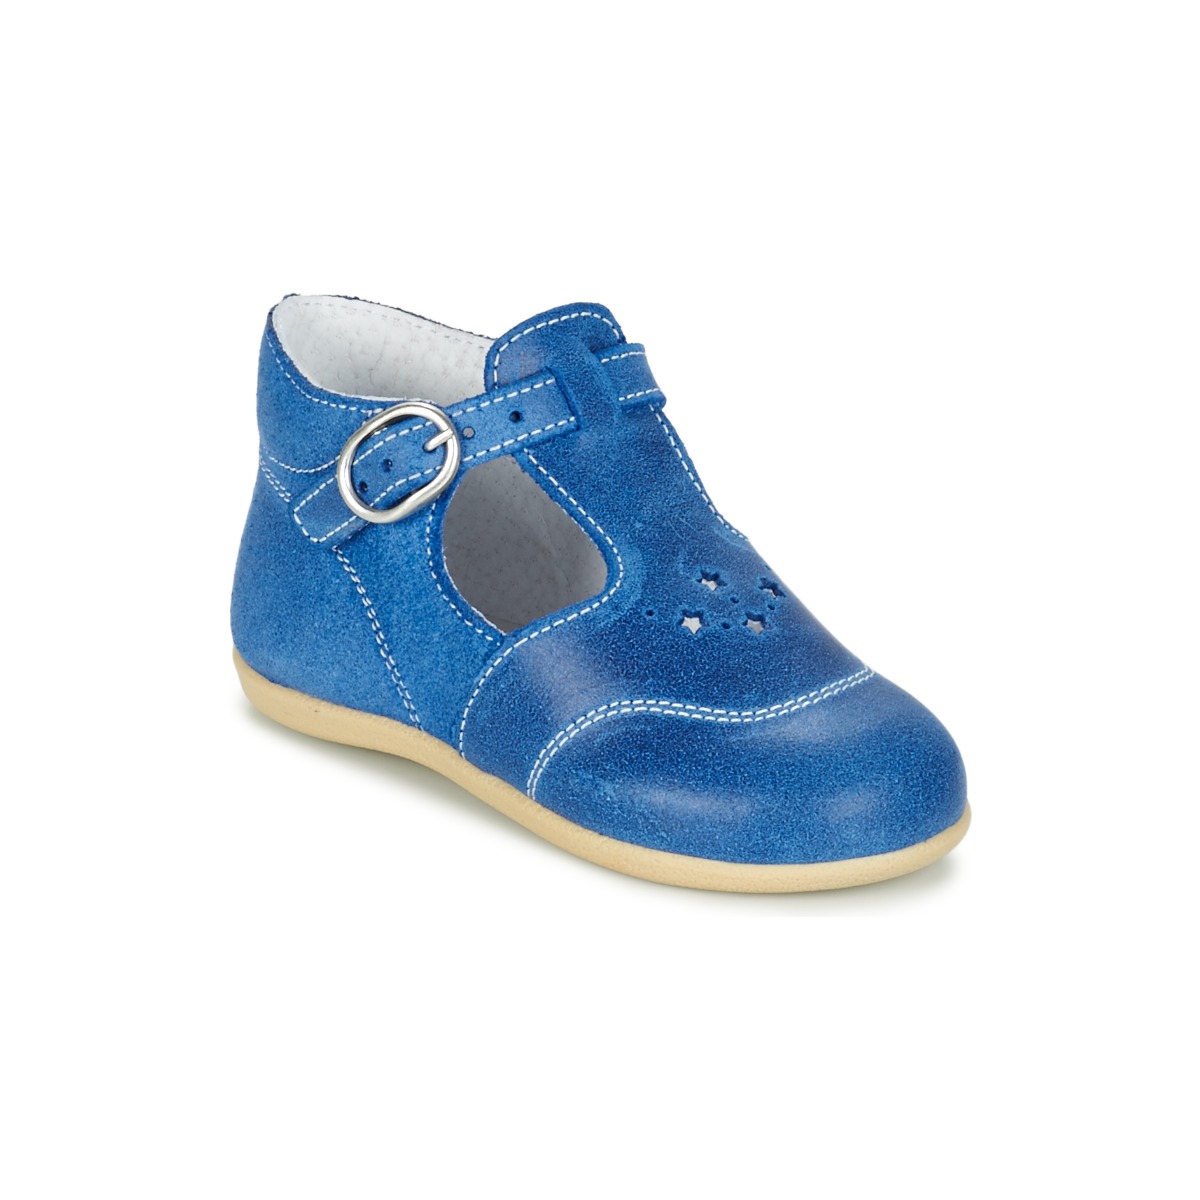 Schuhe Jungen Sandalen / Sandaletten Citrouille et Compagnie GODOLO Blau